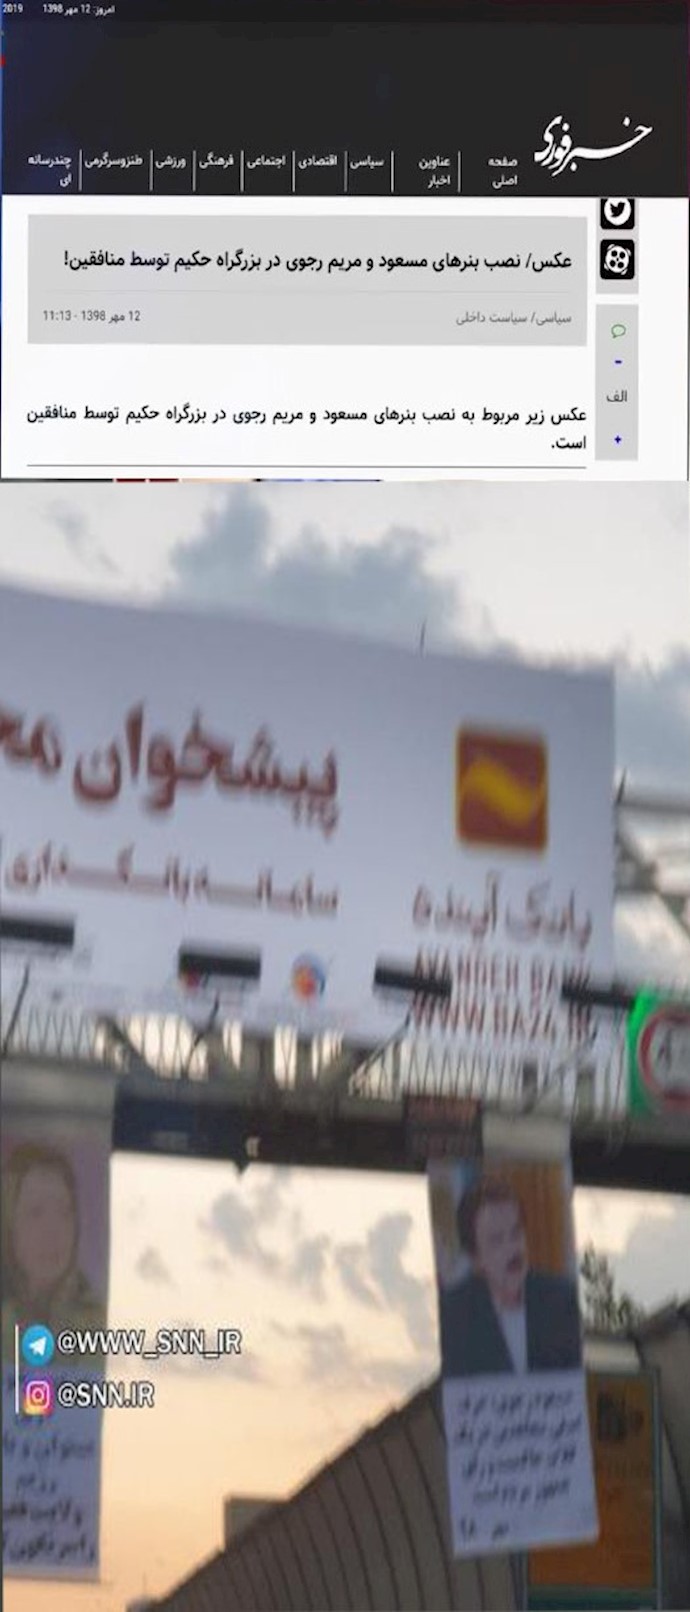 تعليق لافتات تحمل صورًا لمسعود ومريم رجوي في الطرق السريعة في طهران